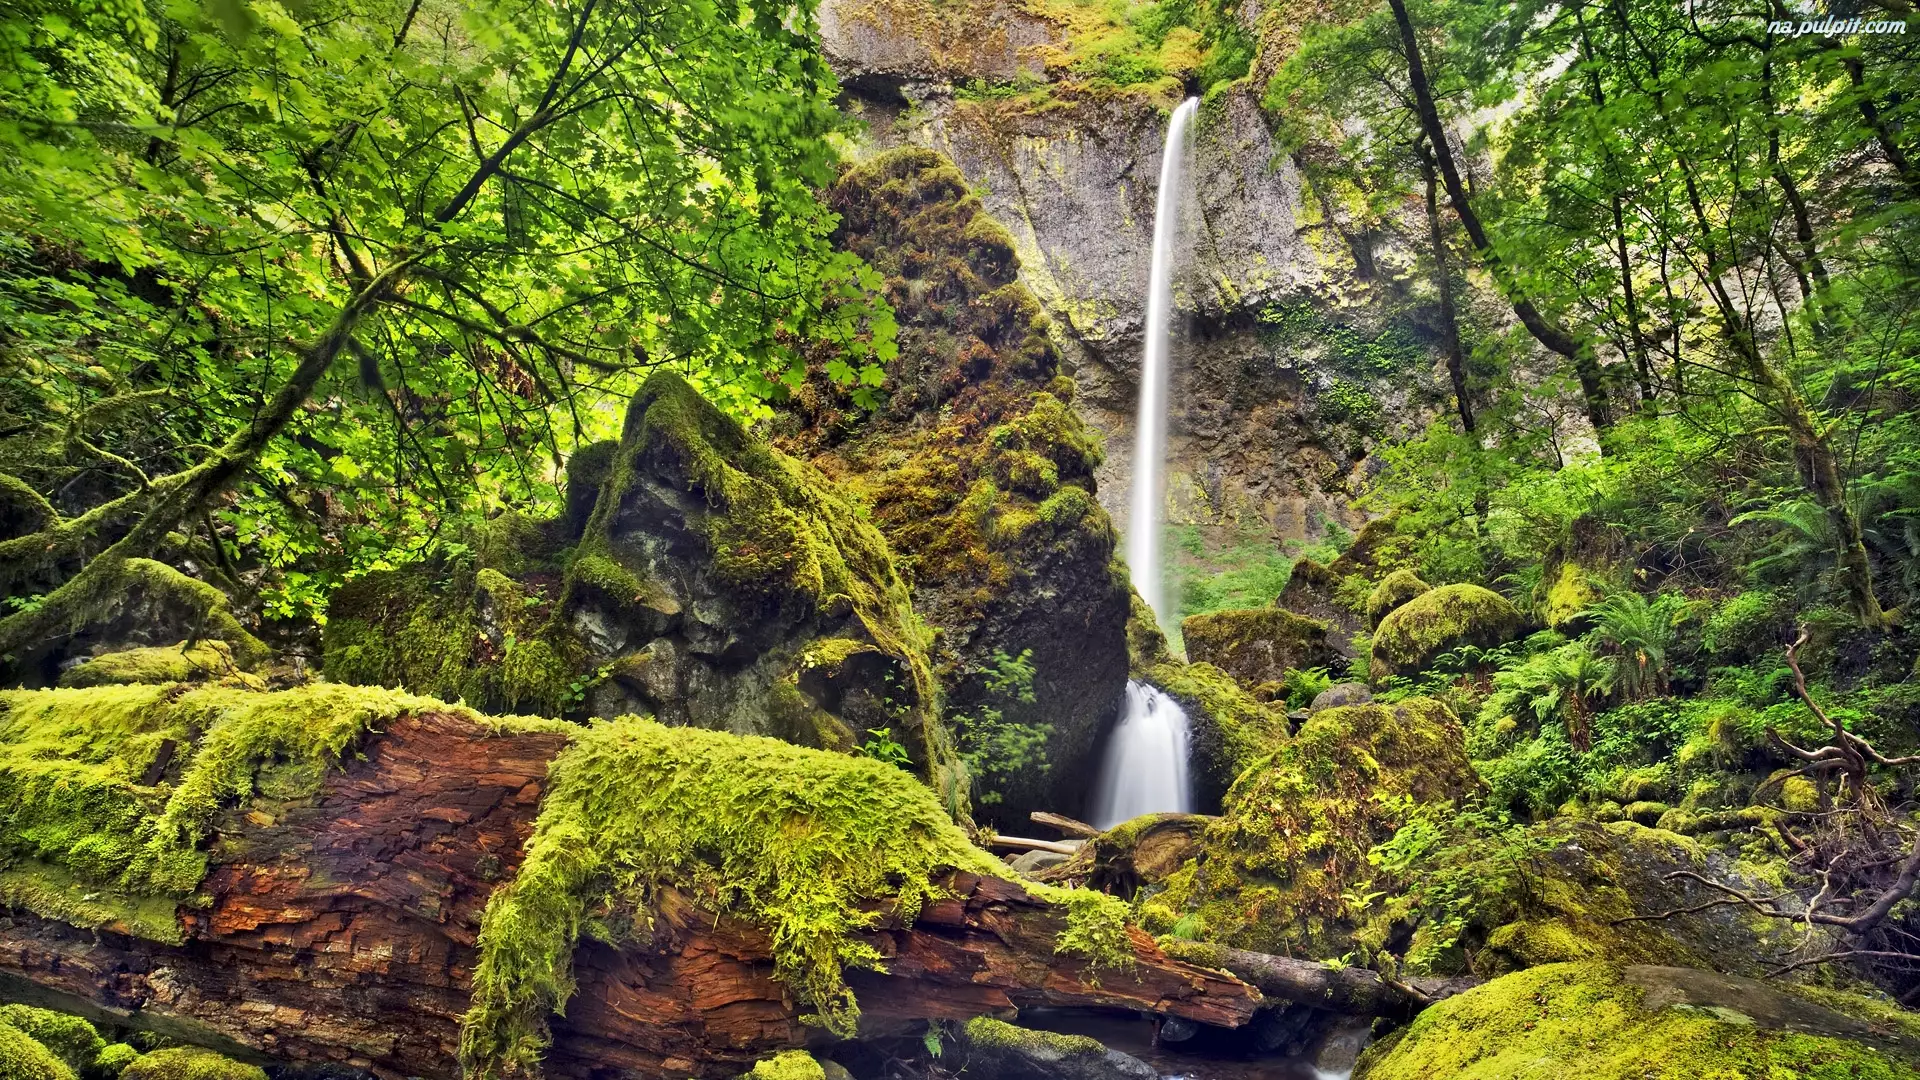 Skały, Drzewa, Krzewy, Las, Potok McCord Creek, Wodospad Elowah Falls, Stan Oregon, Rezerwat przyrody Columbia River Gorge, Stany Zjednoczone, Mech